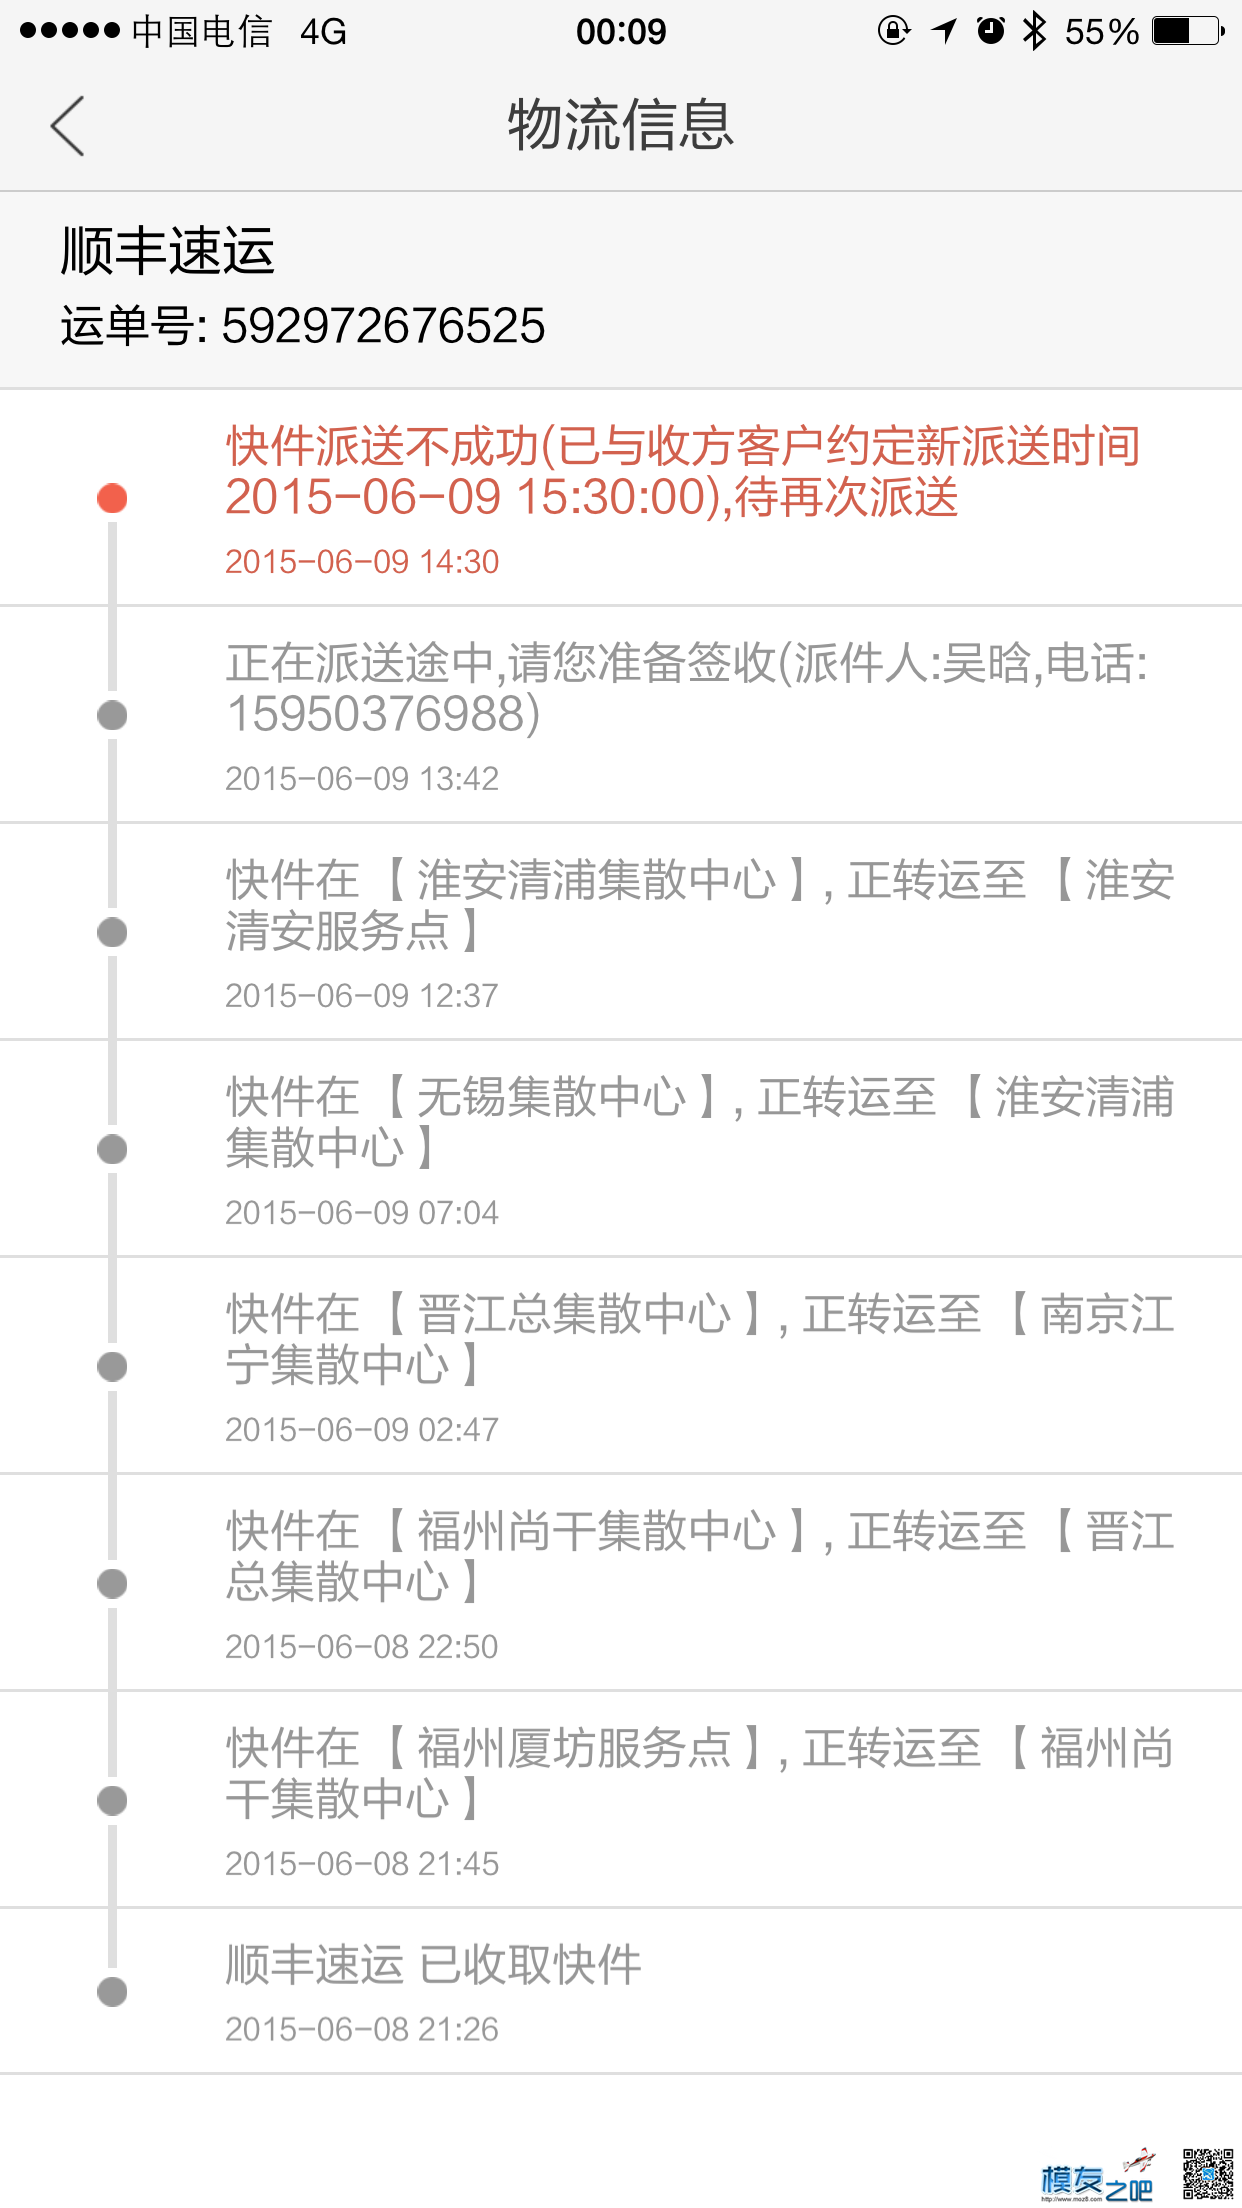 2015/6/10公布一个骗子大家5imx论坛ID:wangyu1204，大家以后卖... 模型制作论坛,飞机模型论坛,航模中国论坛,taobao 作者:xuhan3344 9429 